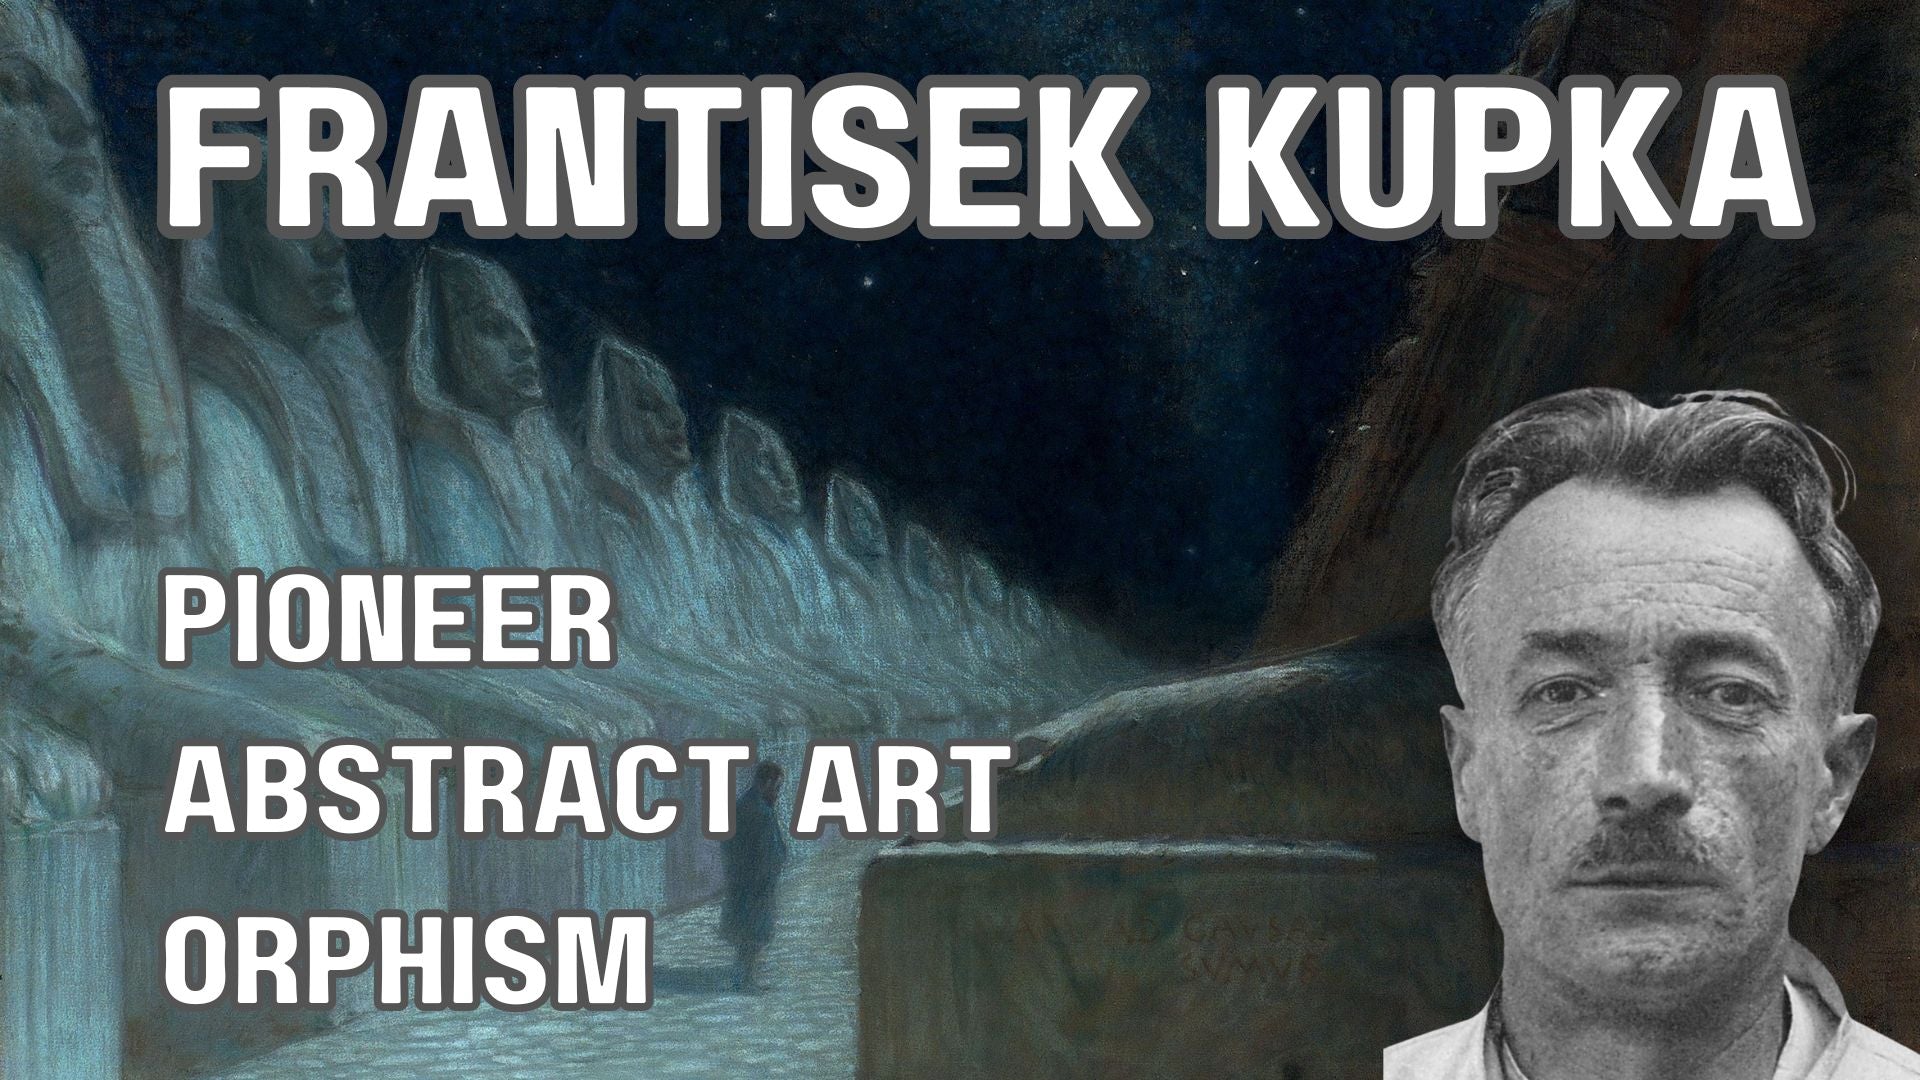 Frantisek Kupka - Pioneer of Orphism and Abstract Art